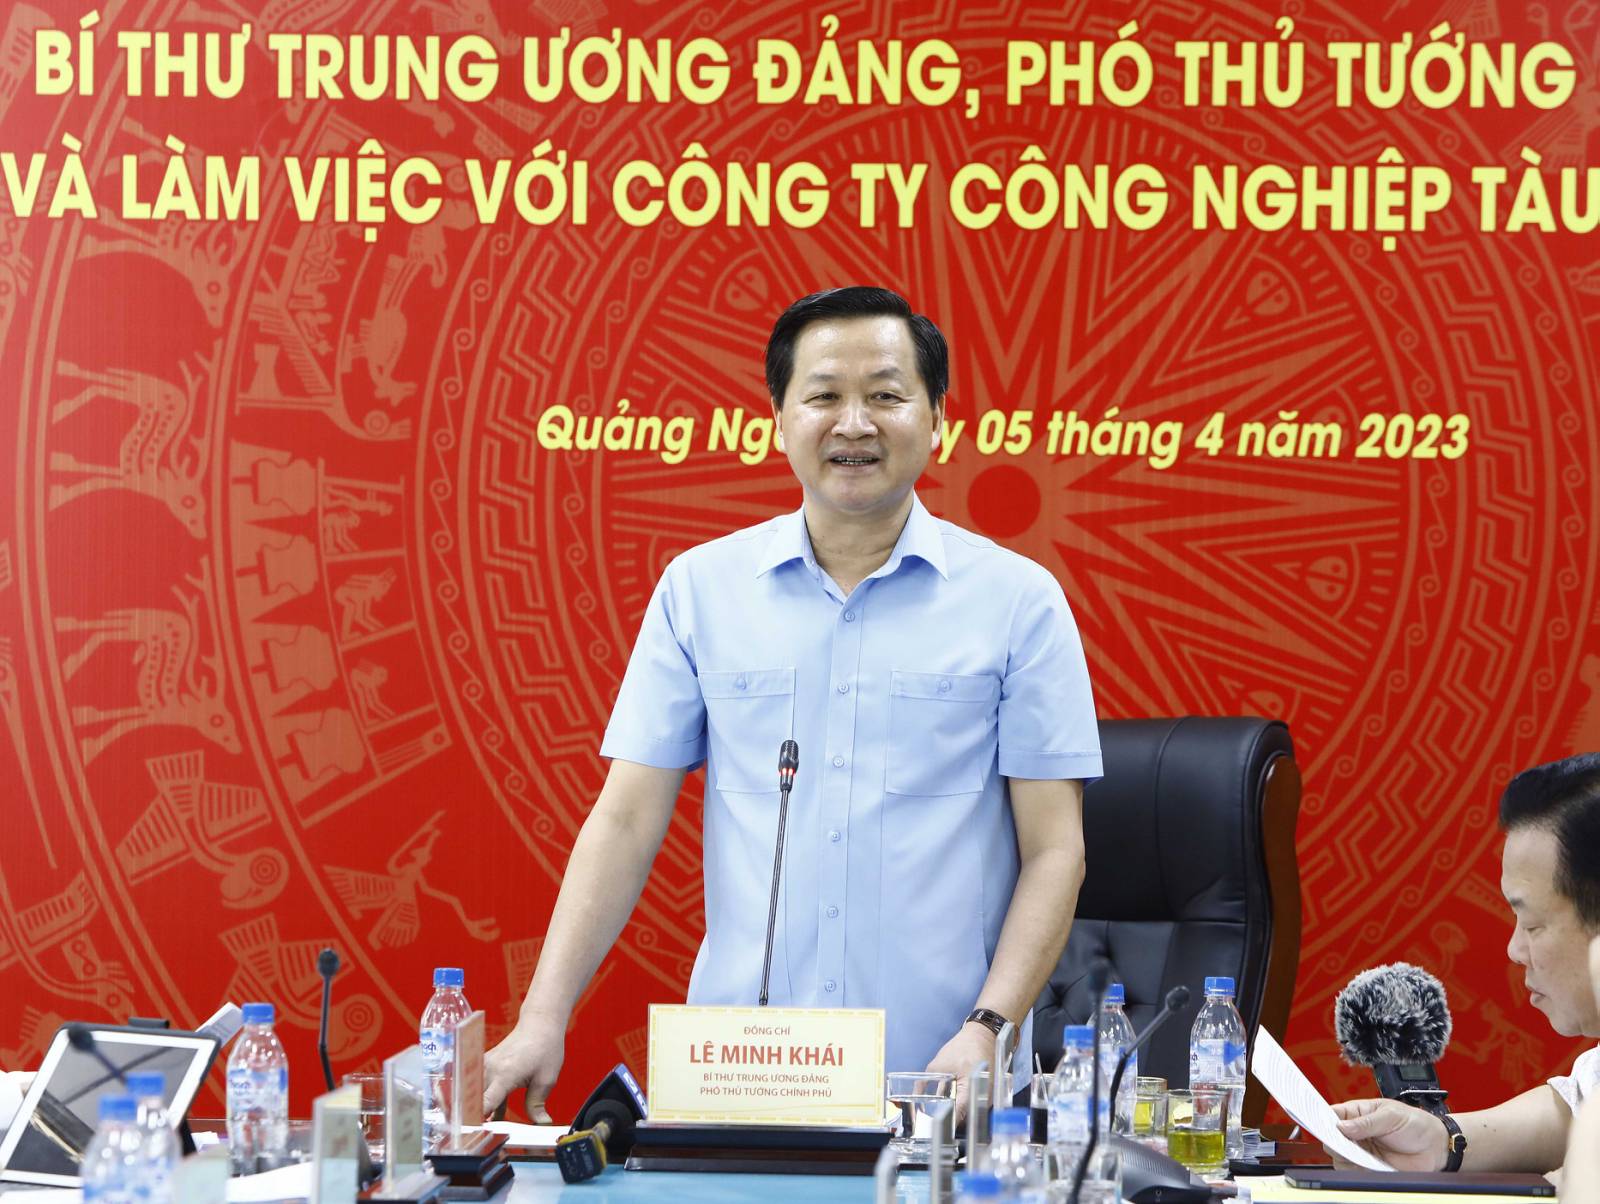 Phó Thủ tướng Lê Minh Khái: Đến 15/5 phải trình Đề án xử lý DQS - Ảnh 8.